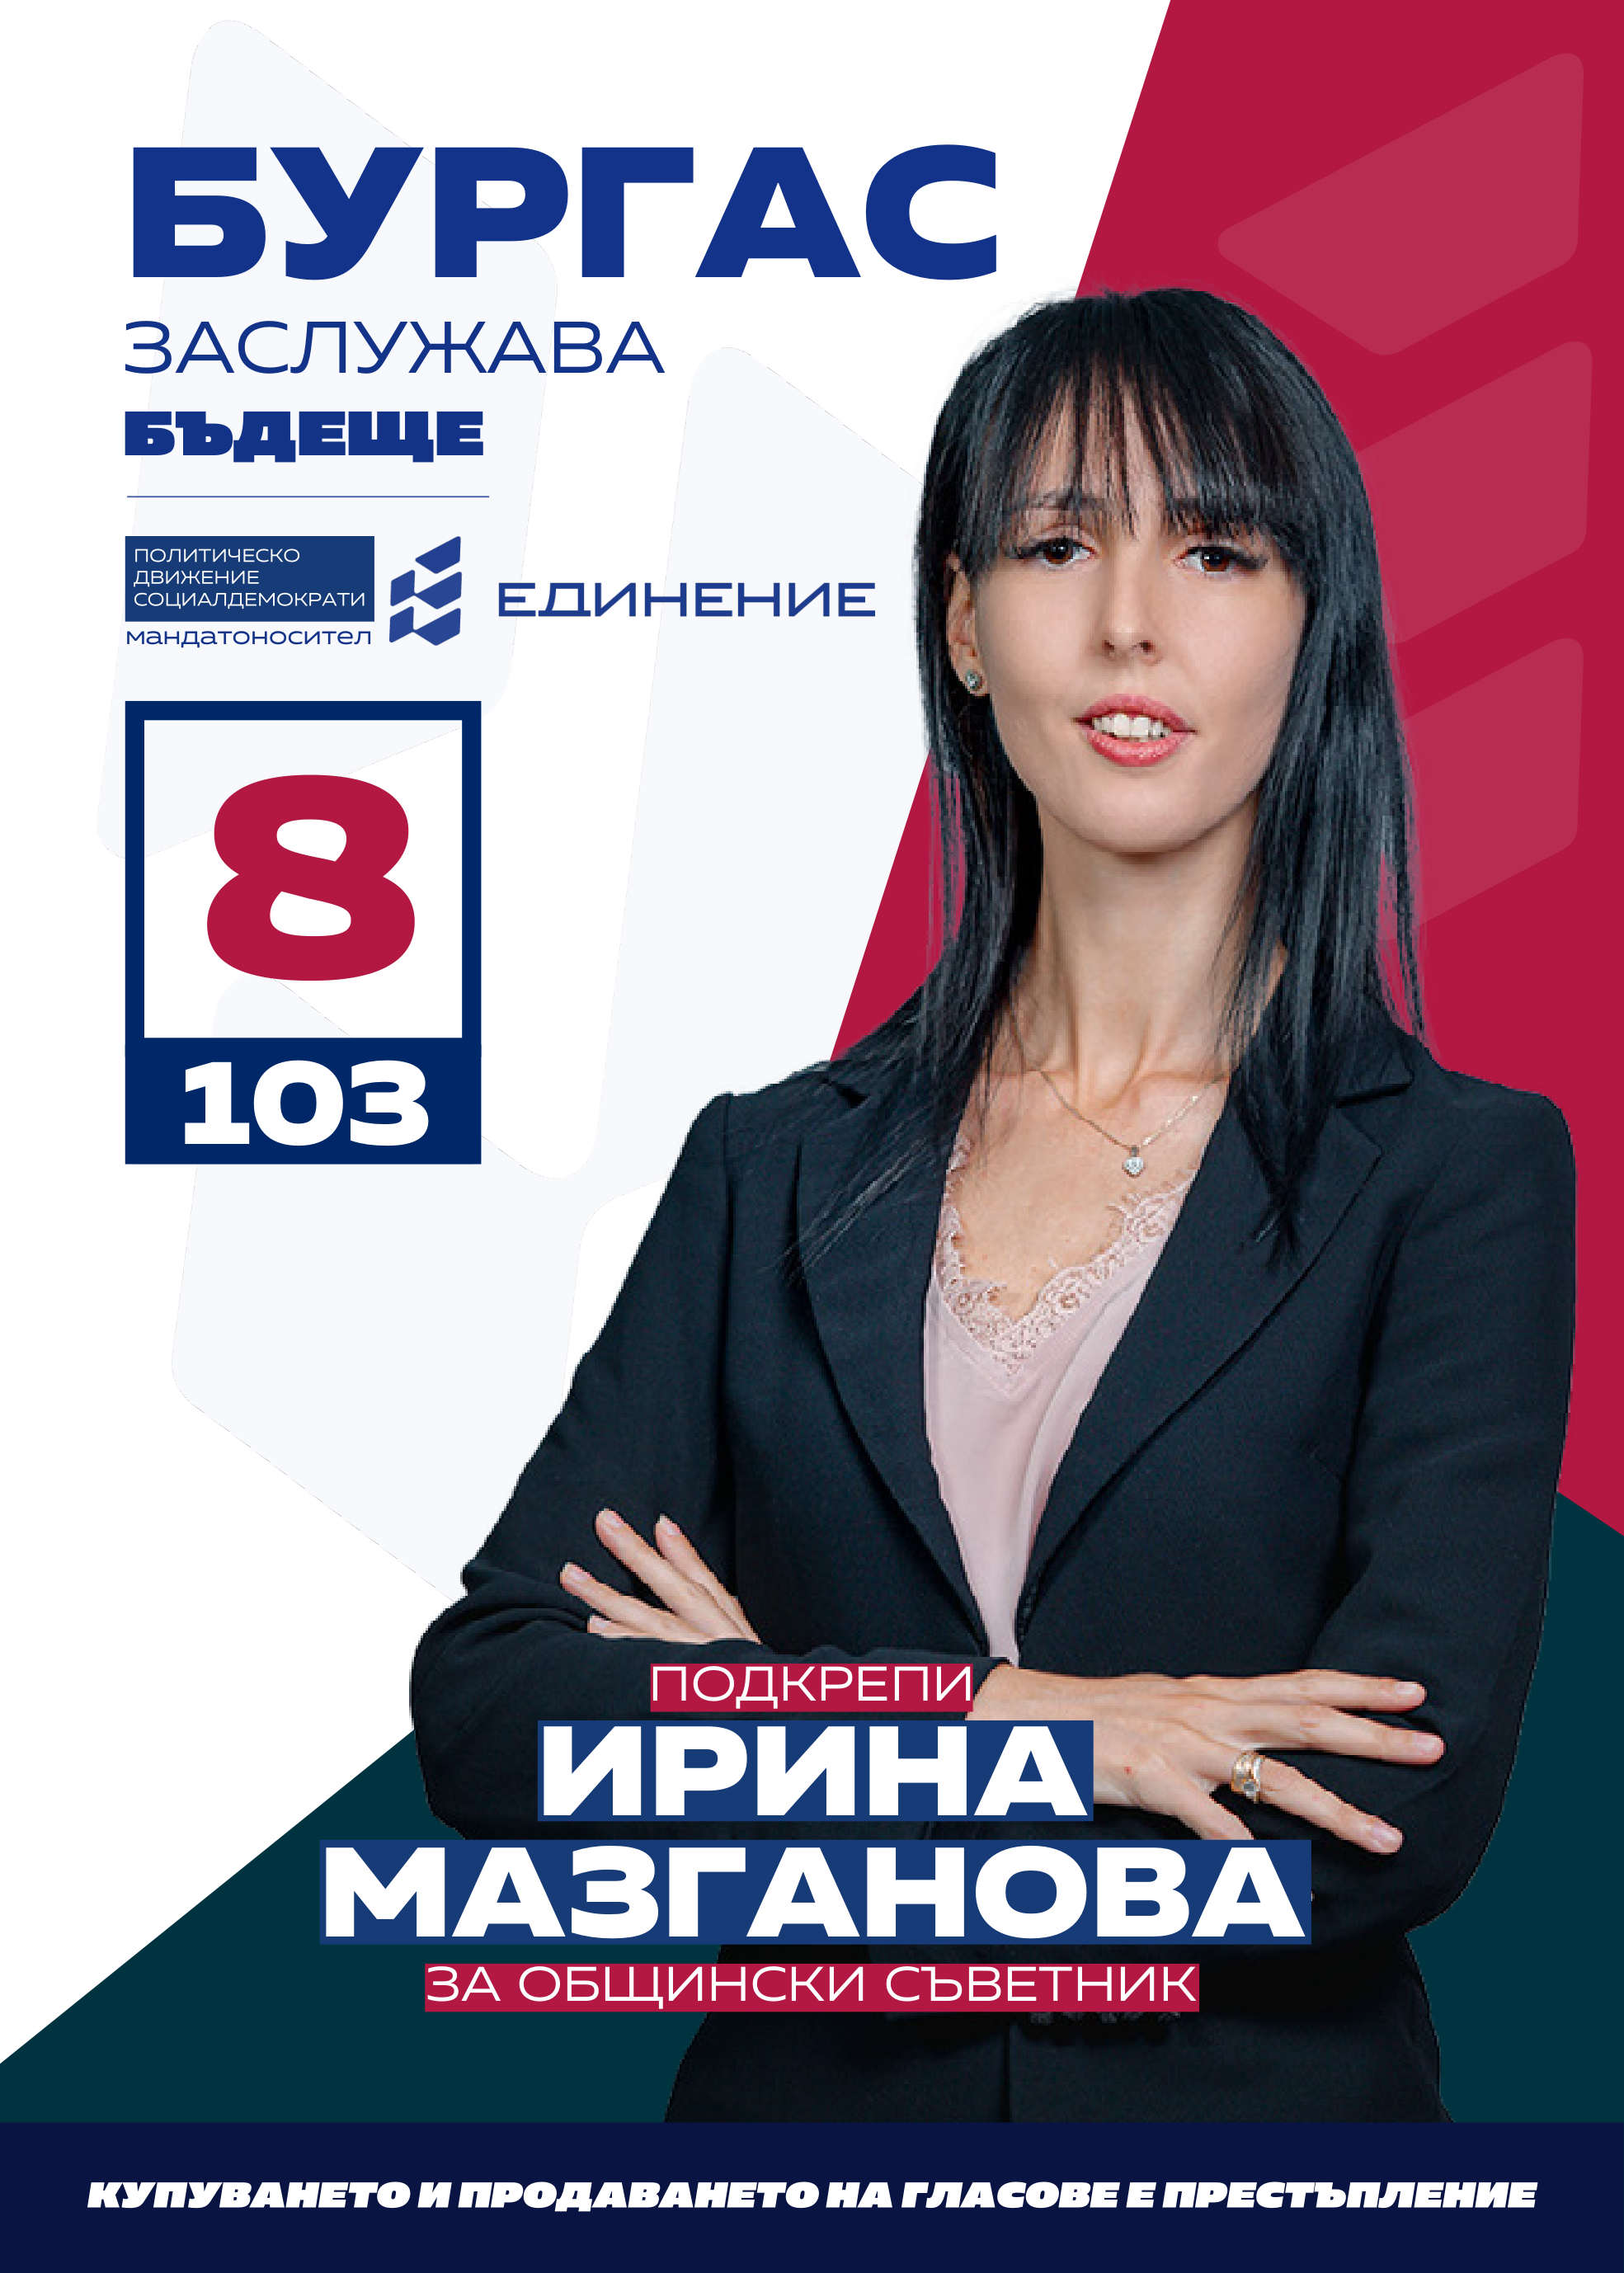 Ирина Мазганова – редактор на новинарски сайт
Кандидатът за общински съветник